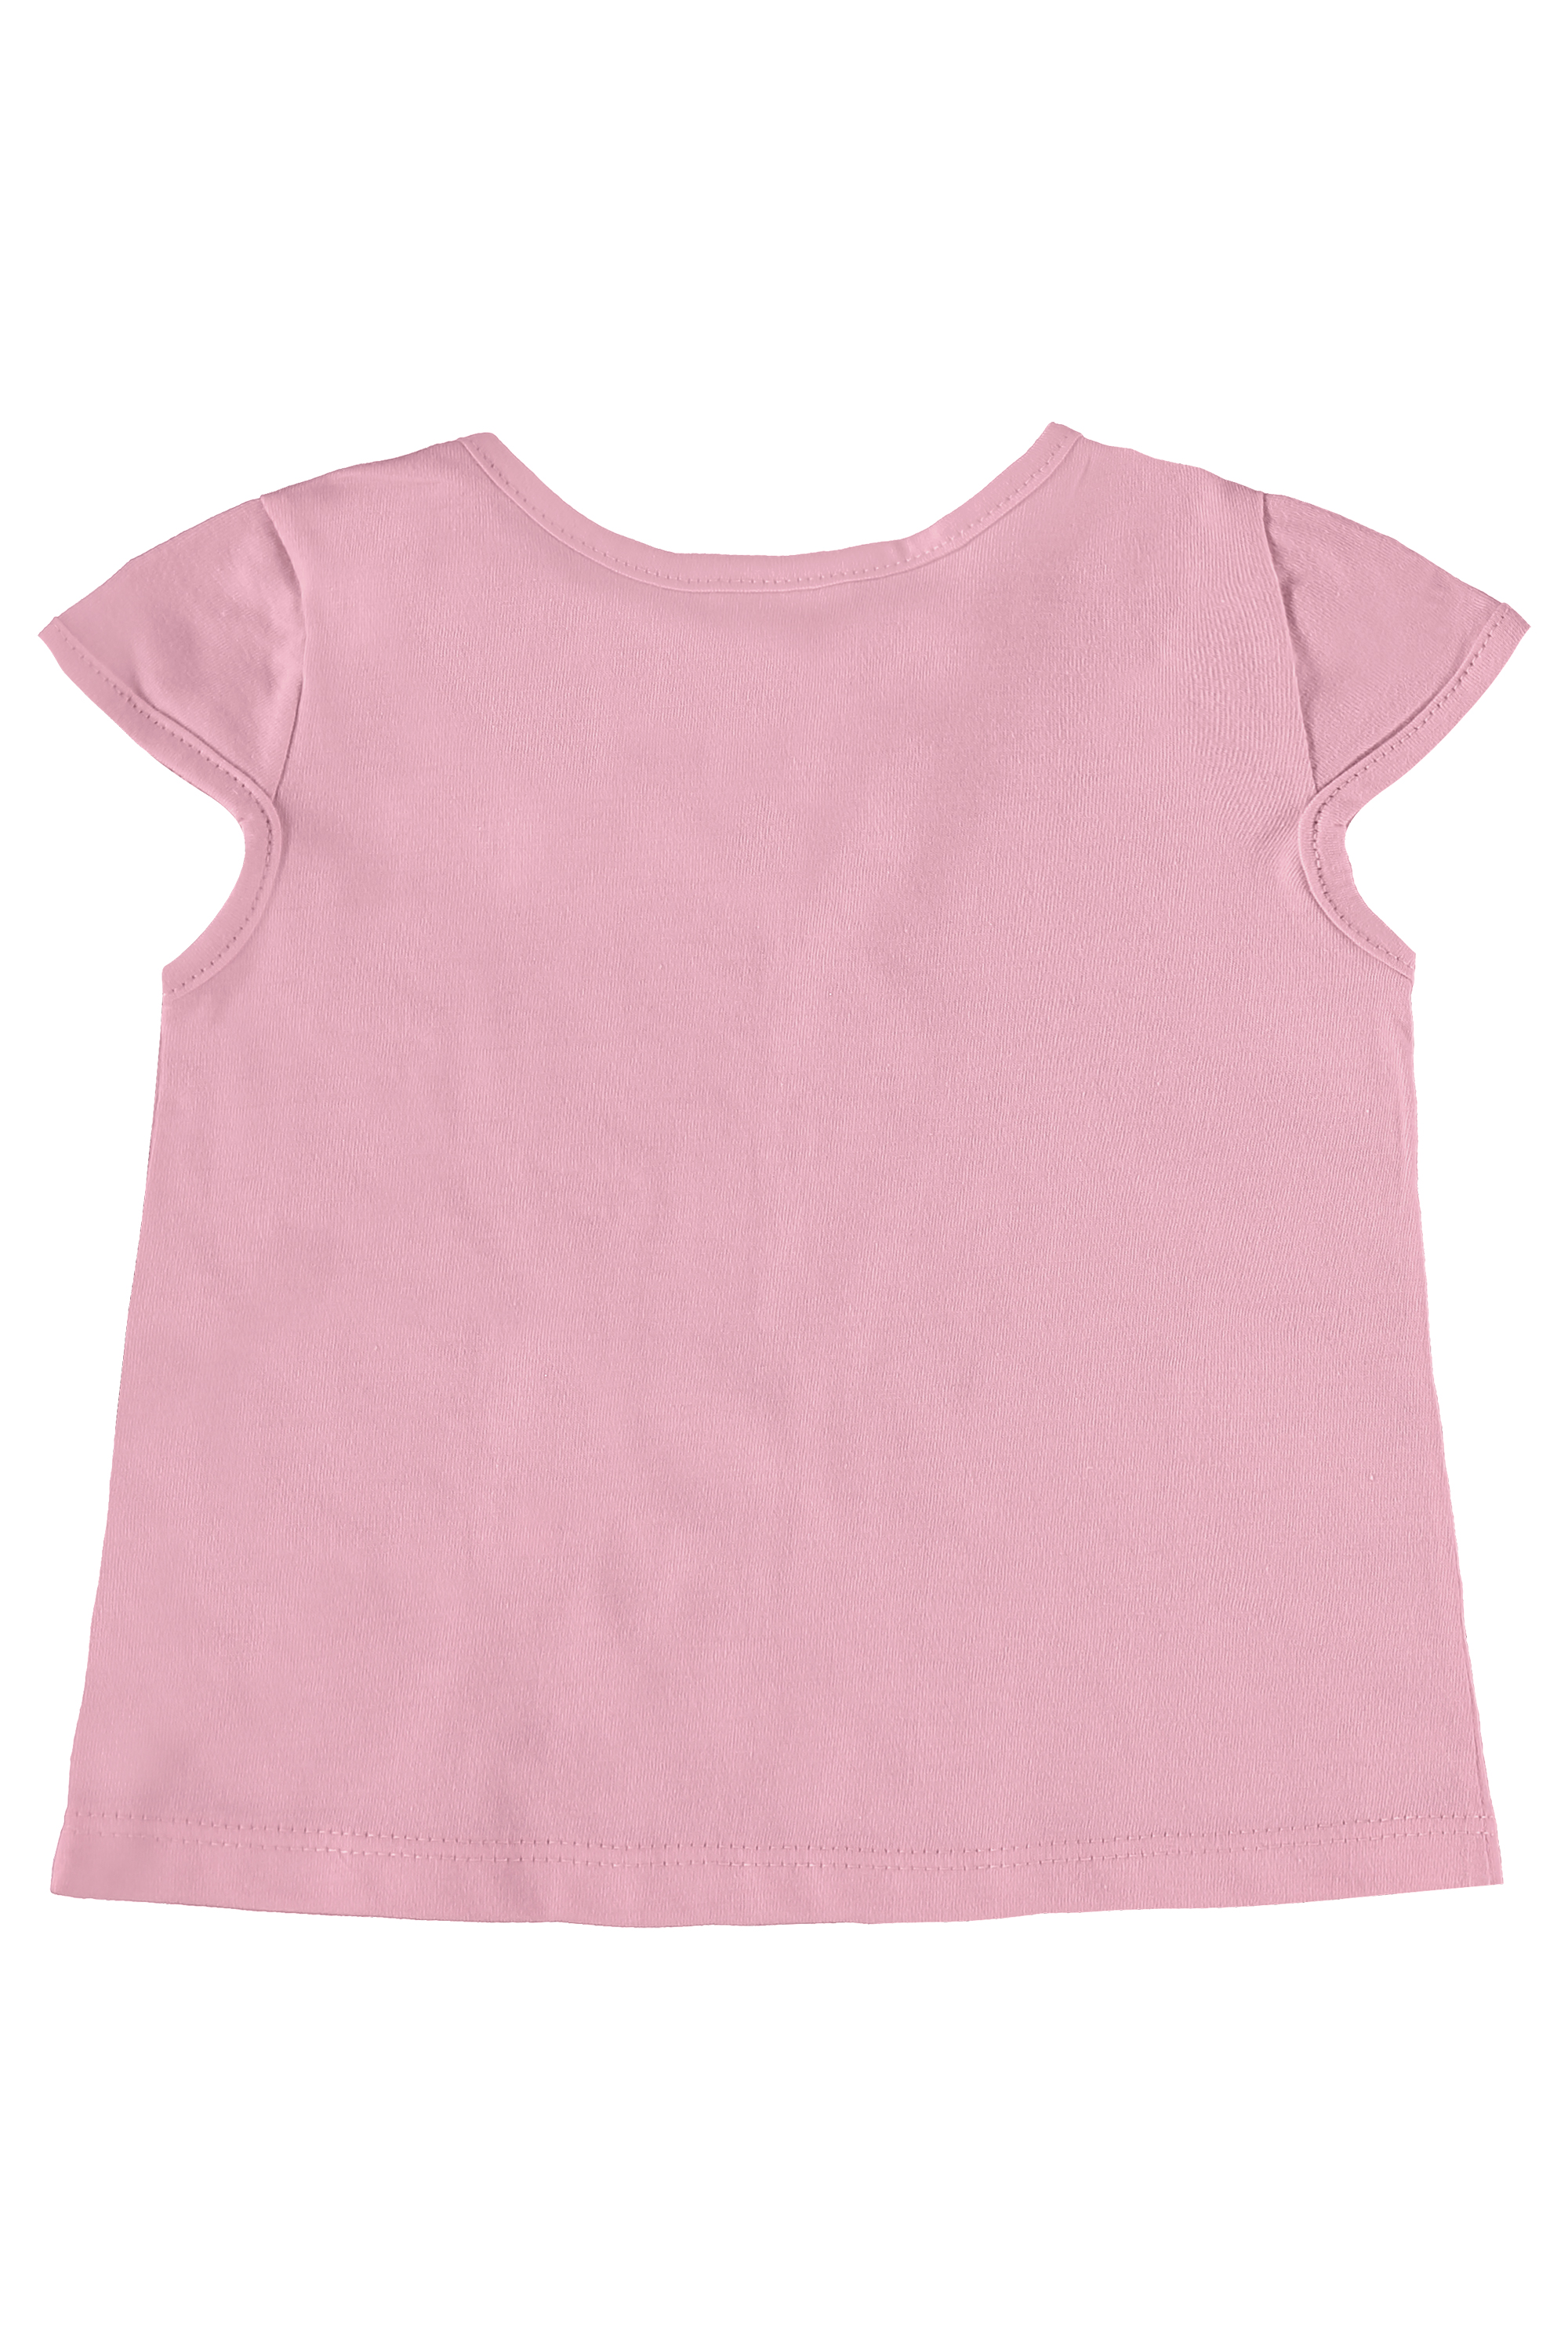 Komplet dziewczęcy, bluzka z krókim rękawem i szorty, różowy, Quimby